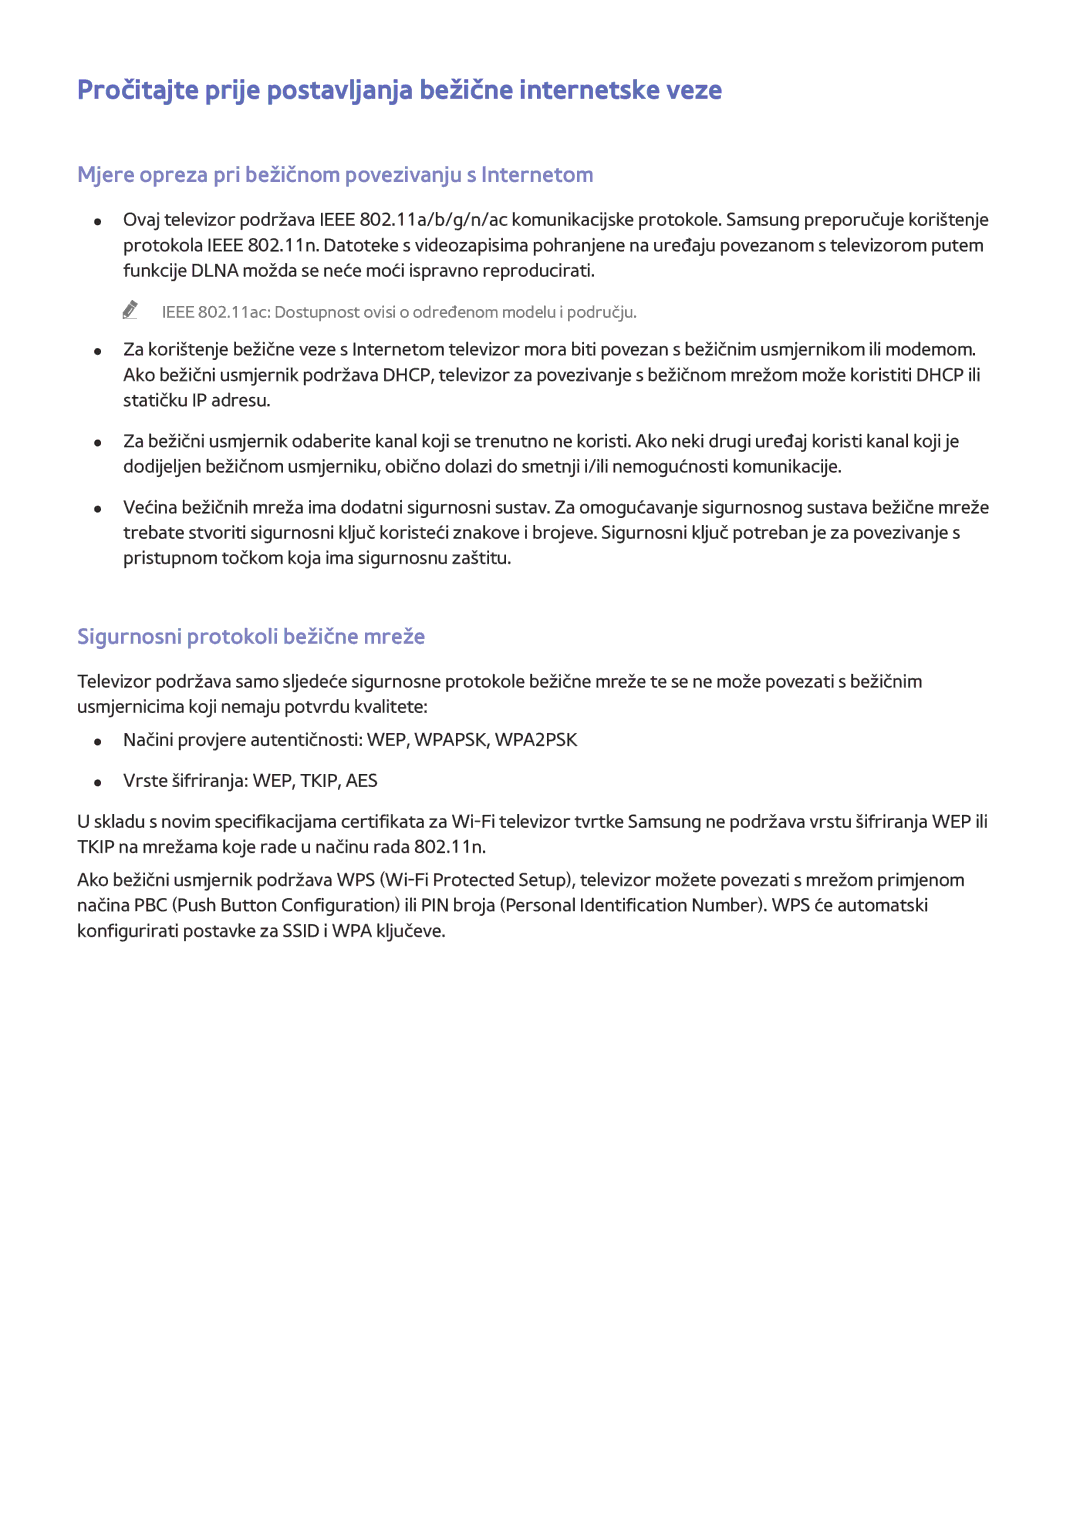 Samsung UE65HU8500TXXH manual Pročitajte prije postavljanja bežične internetske veze, Sigurnosni protokoli bežične mreže 